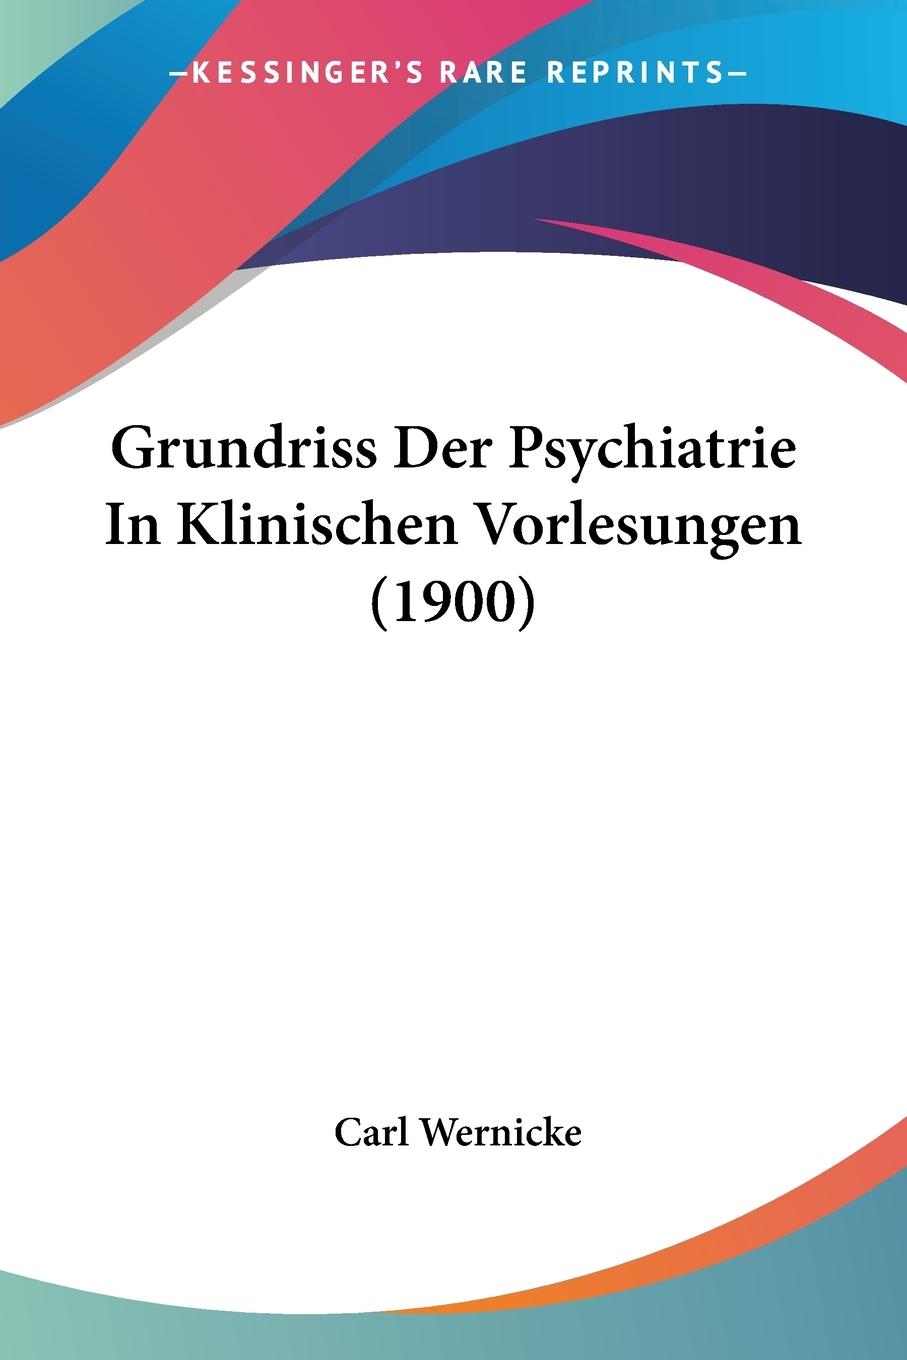 Grundriss Der Psychiatrie In Klinischen Vorlesungen (1900) / Carl Wernicke / Taschenbuch / Paperback / Deutsch / 2009 / Kessinger Publishing, LLC / EAN 9781120515681 - Wernicke, Carl